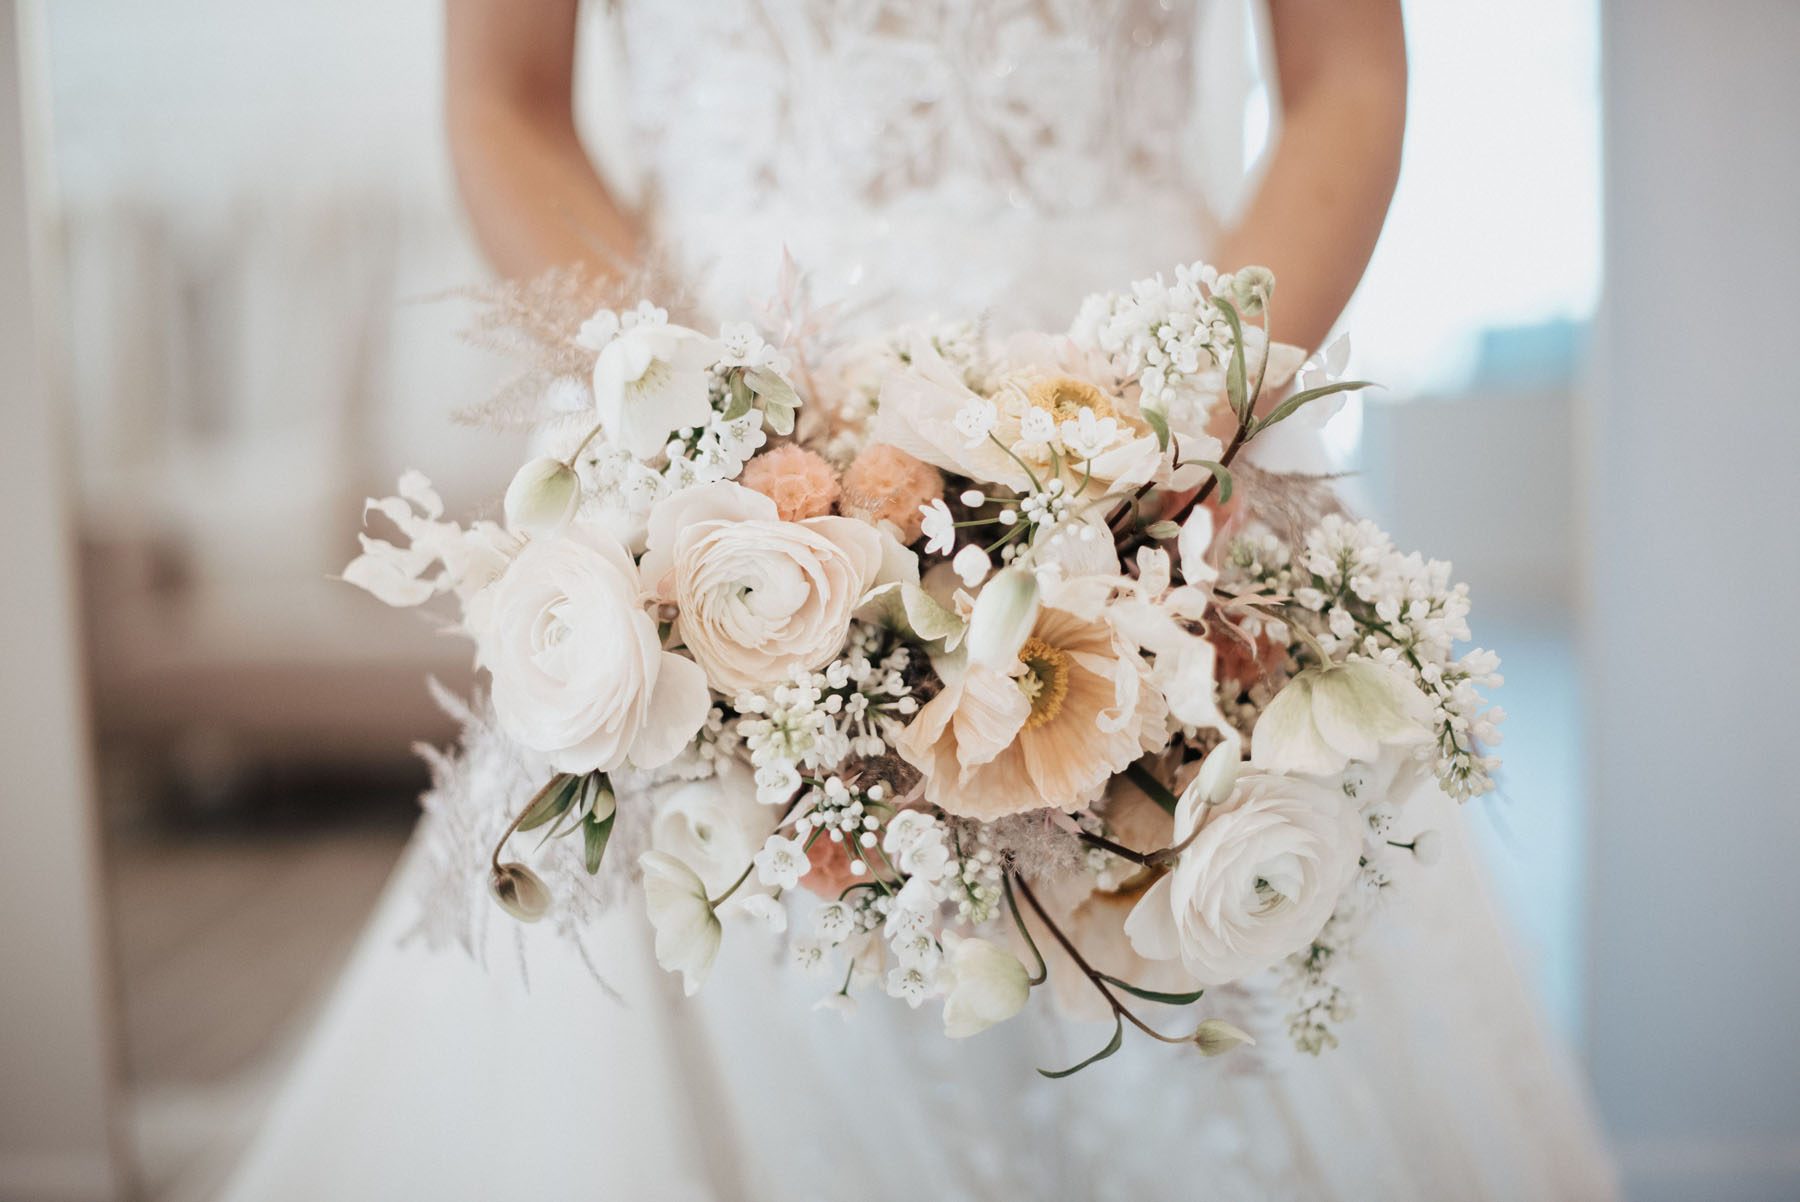 Blush, peach and white bridal bouquet